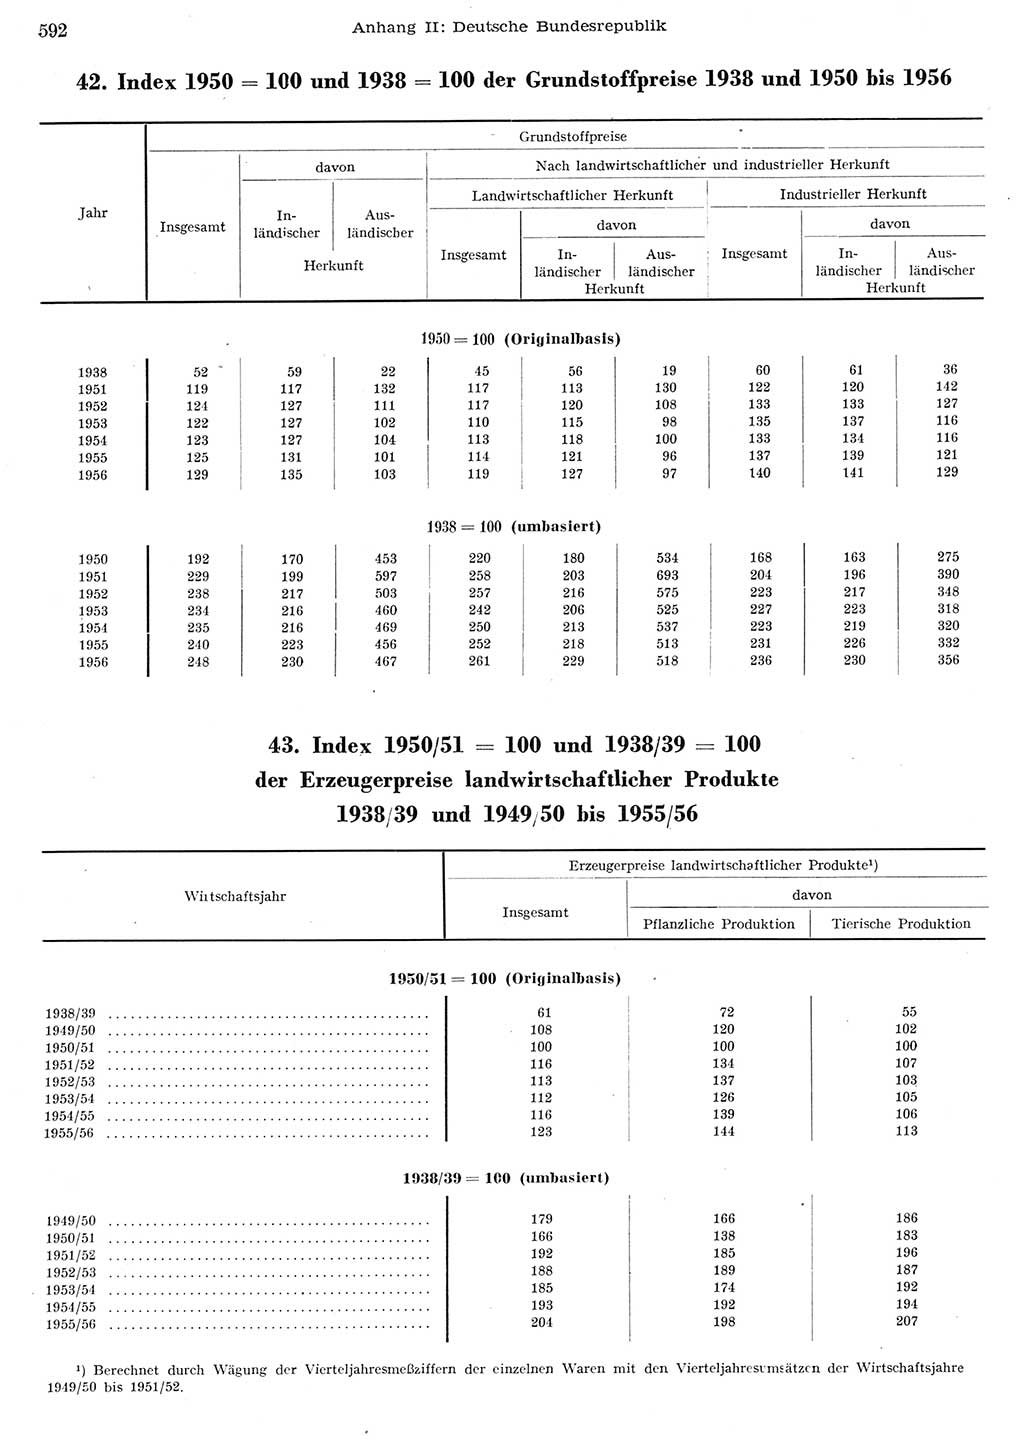 Statistisches Jahrbuch der Deutschen Demokratischen Republik (DDR) 1956, Seite 592 (Stat. Jb. DDR 1956, S. 592)